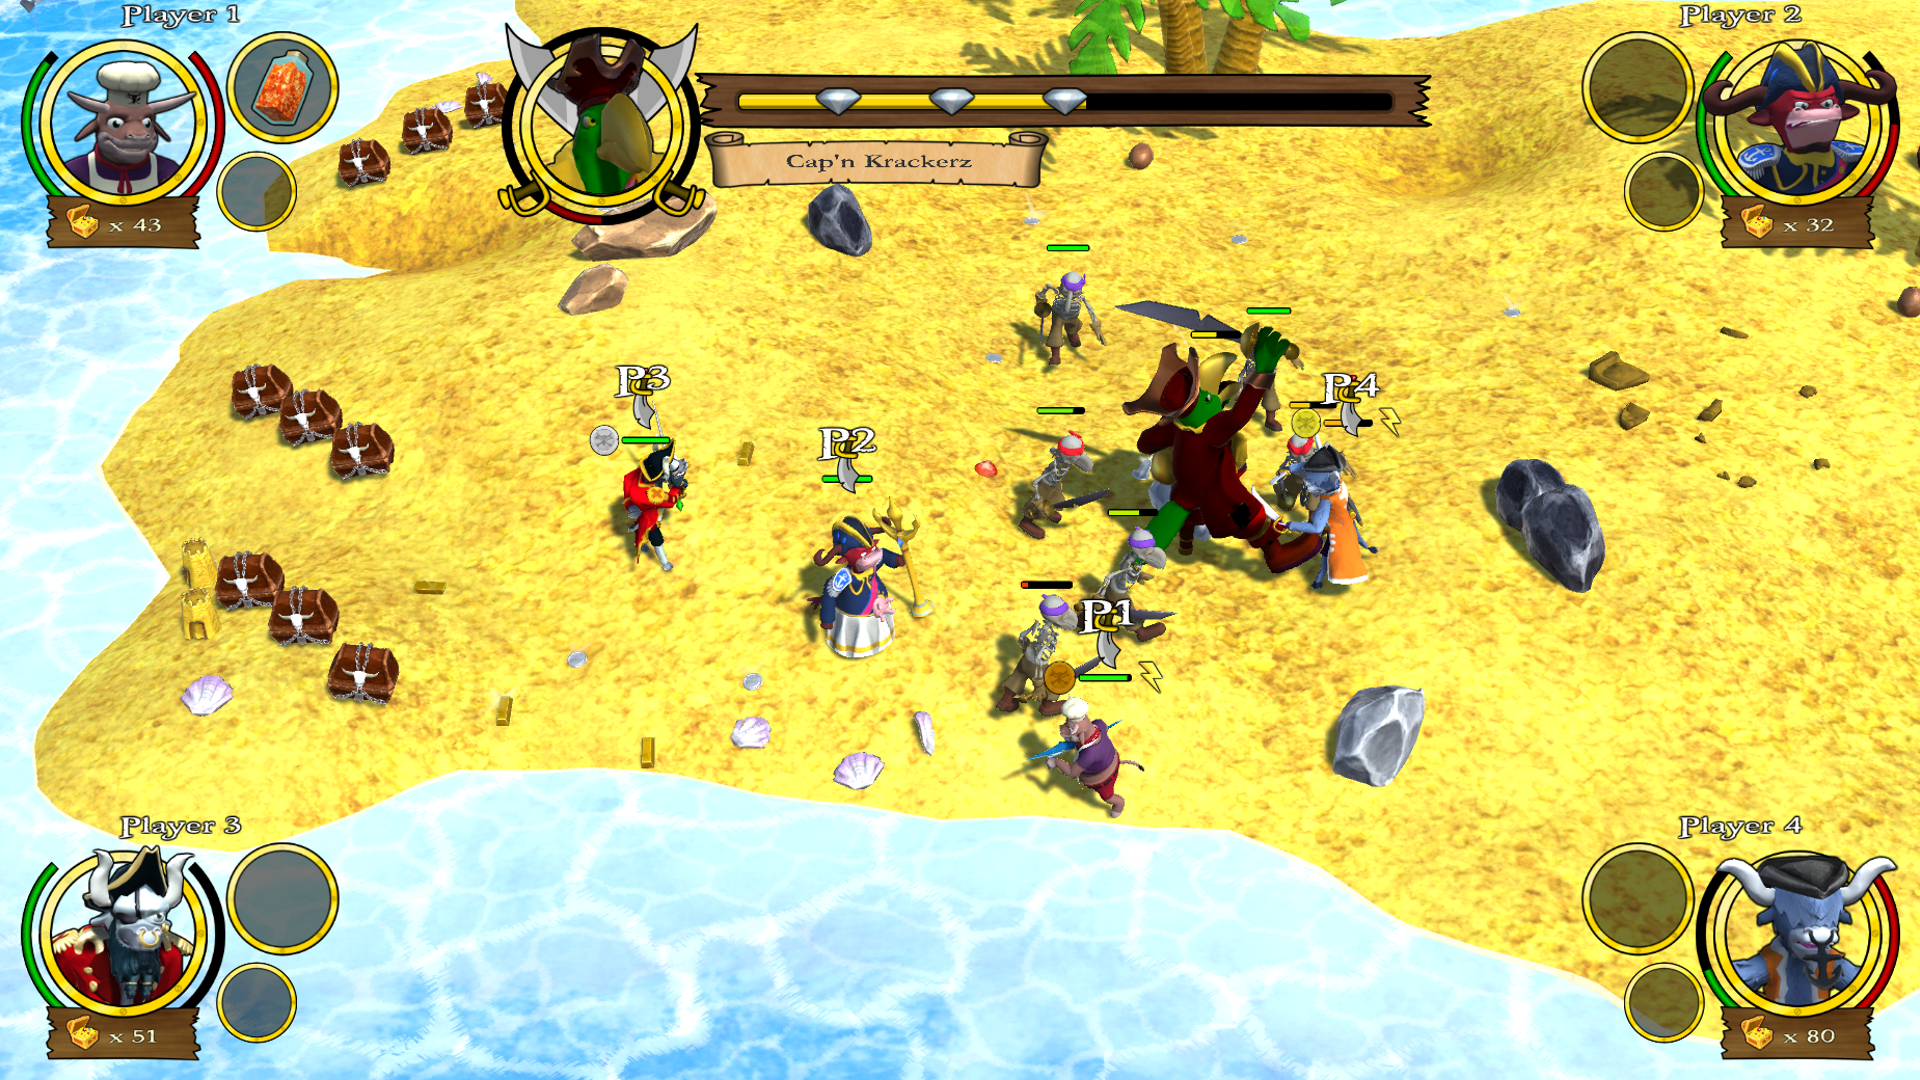 Defiance (boss battle) game mode, Gyutan Sands arena